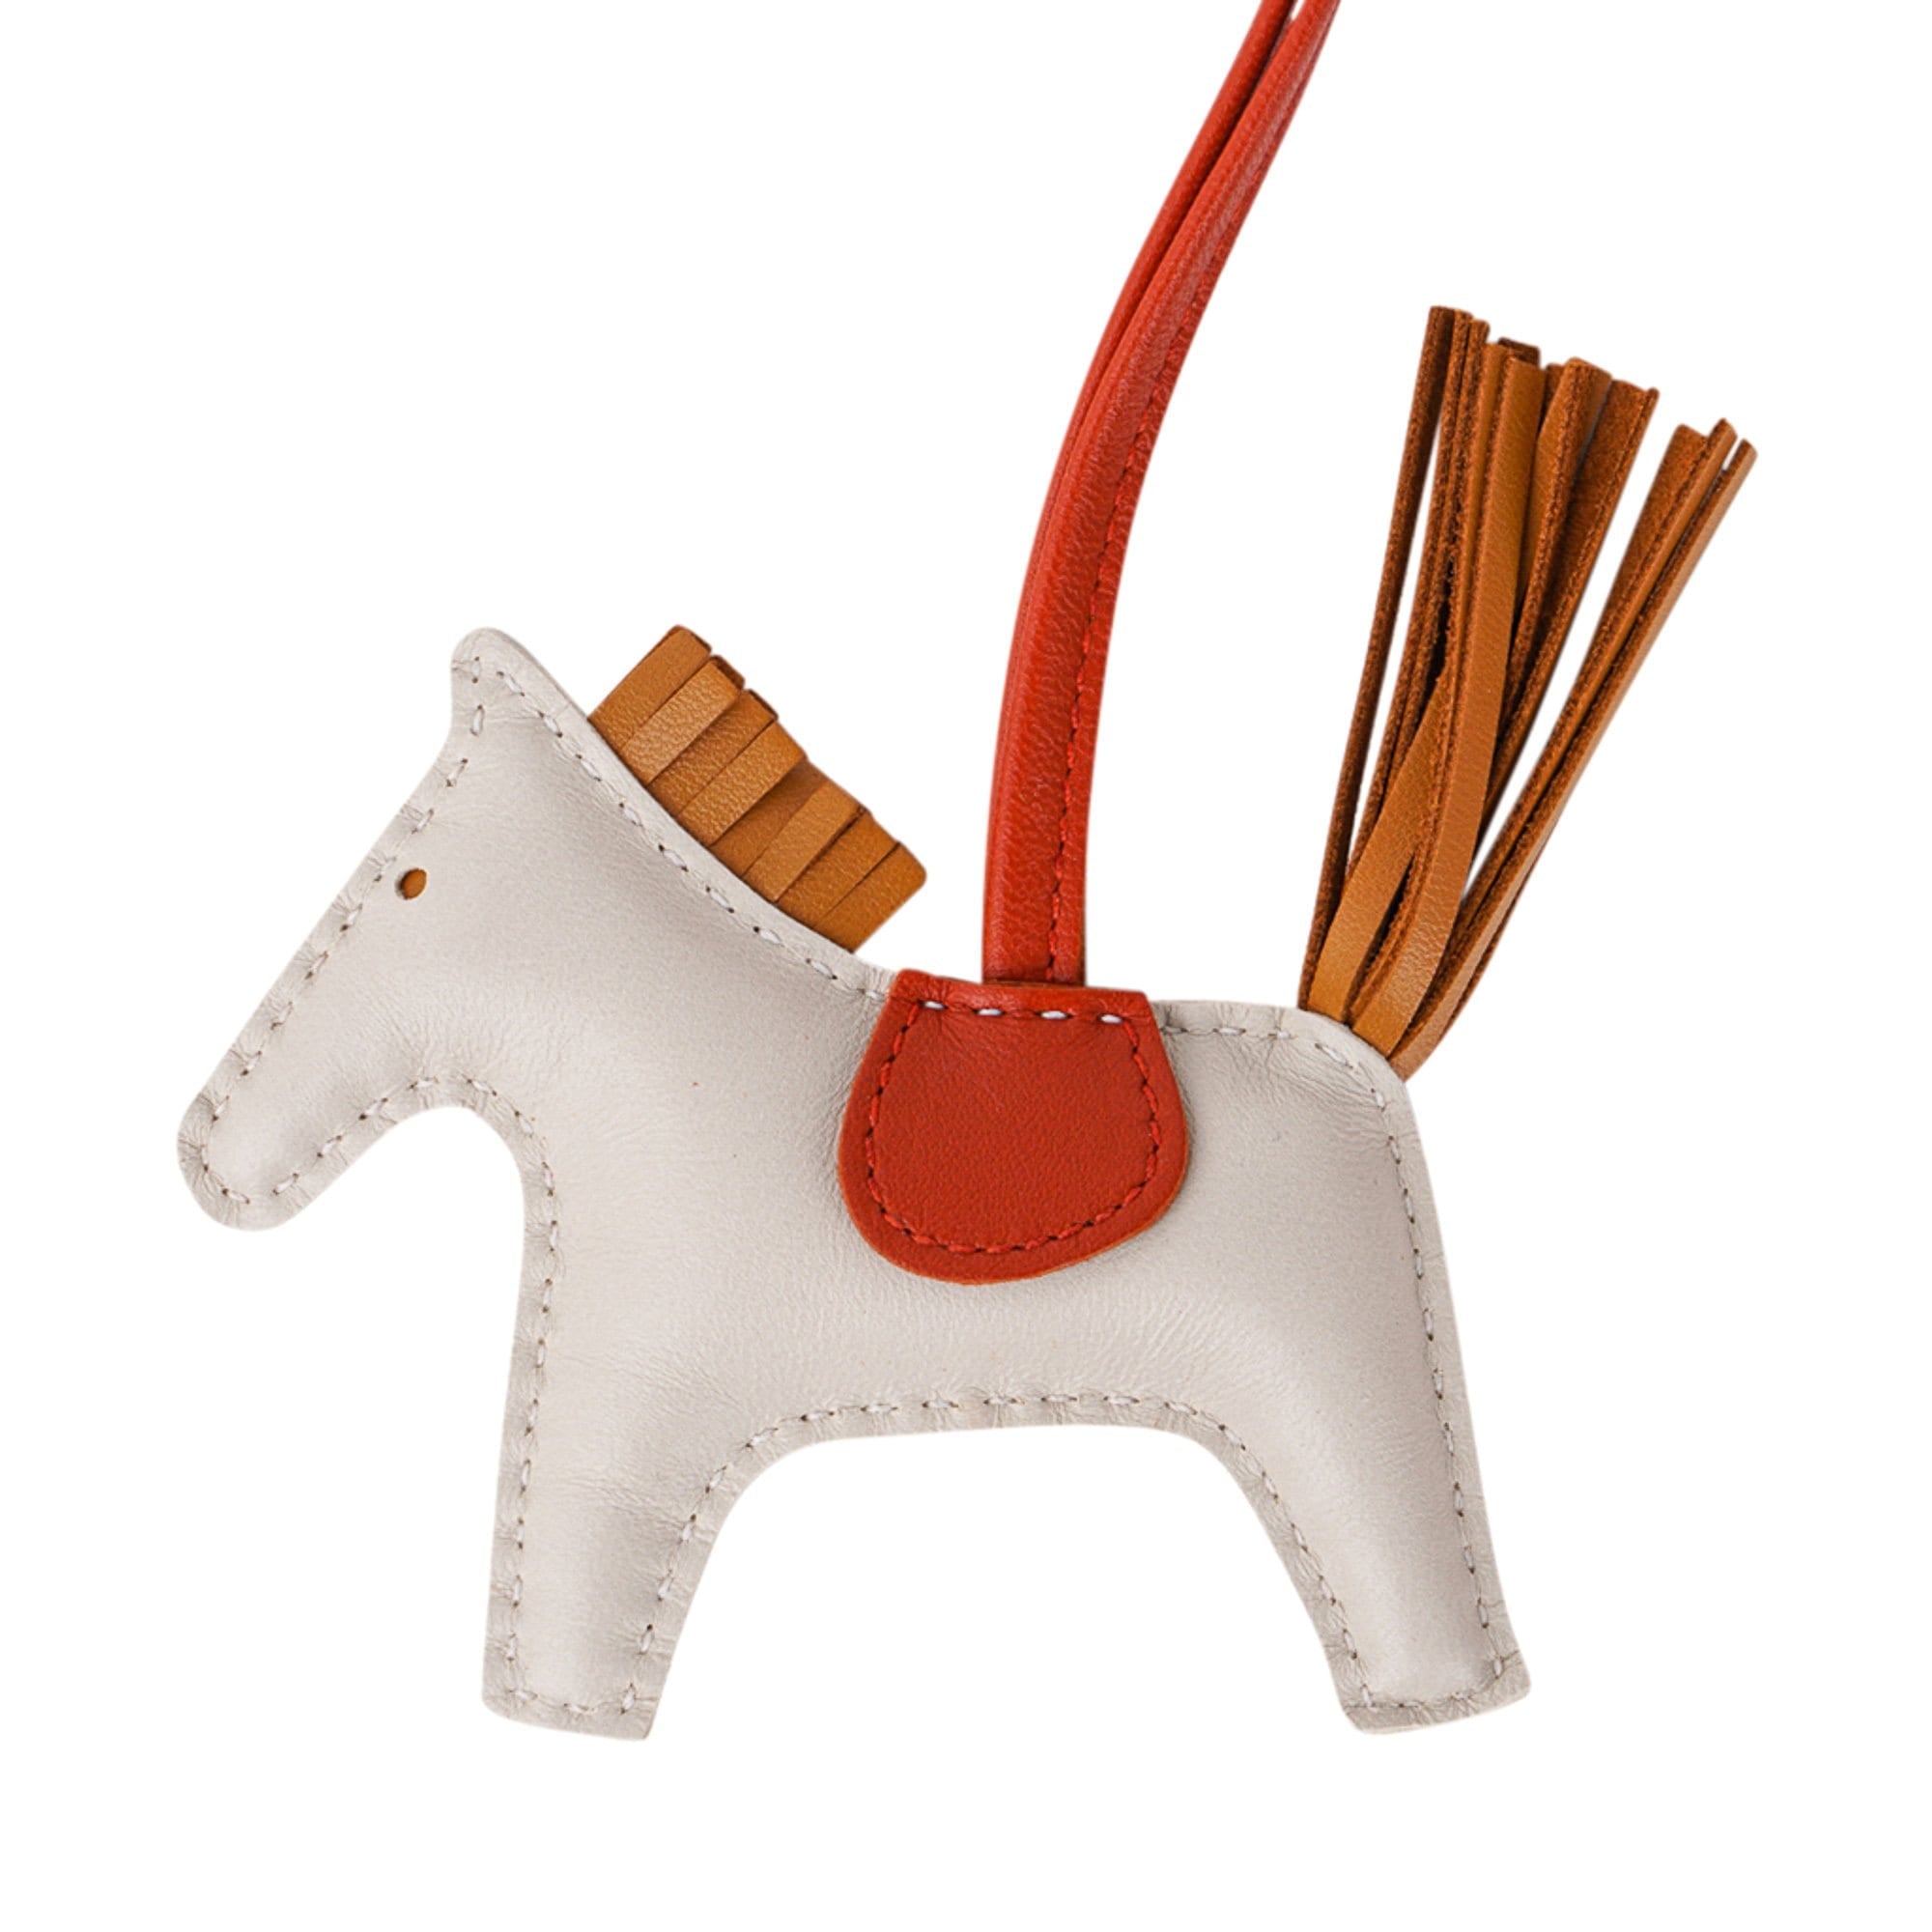 Hermes Celeste/Naturel Bouton D'Or/Cornaline GriGri Rodeo Horse Bag Charm  Hermes